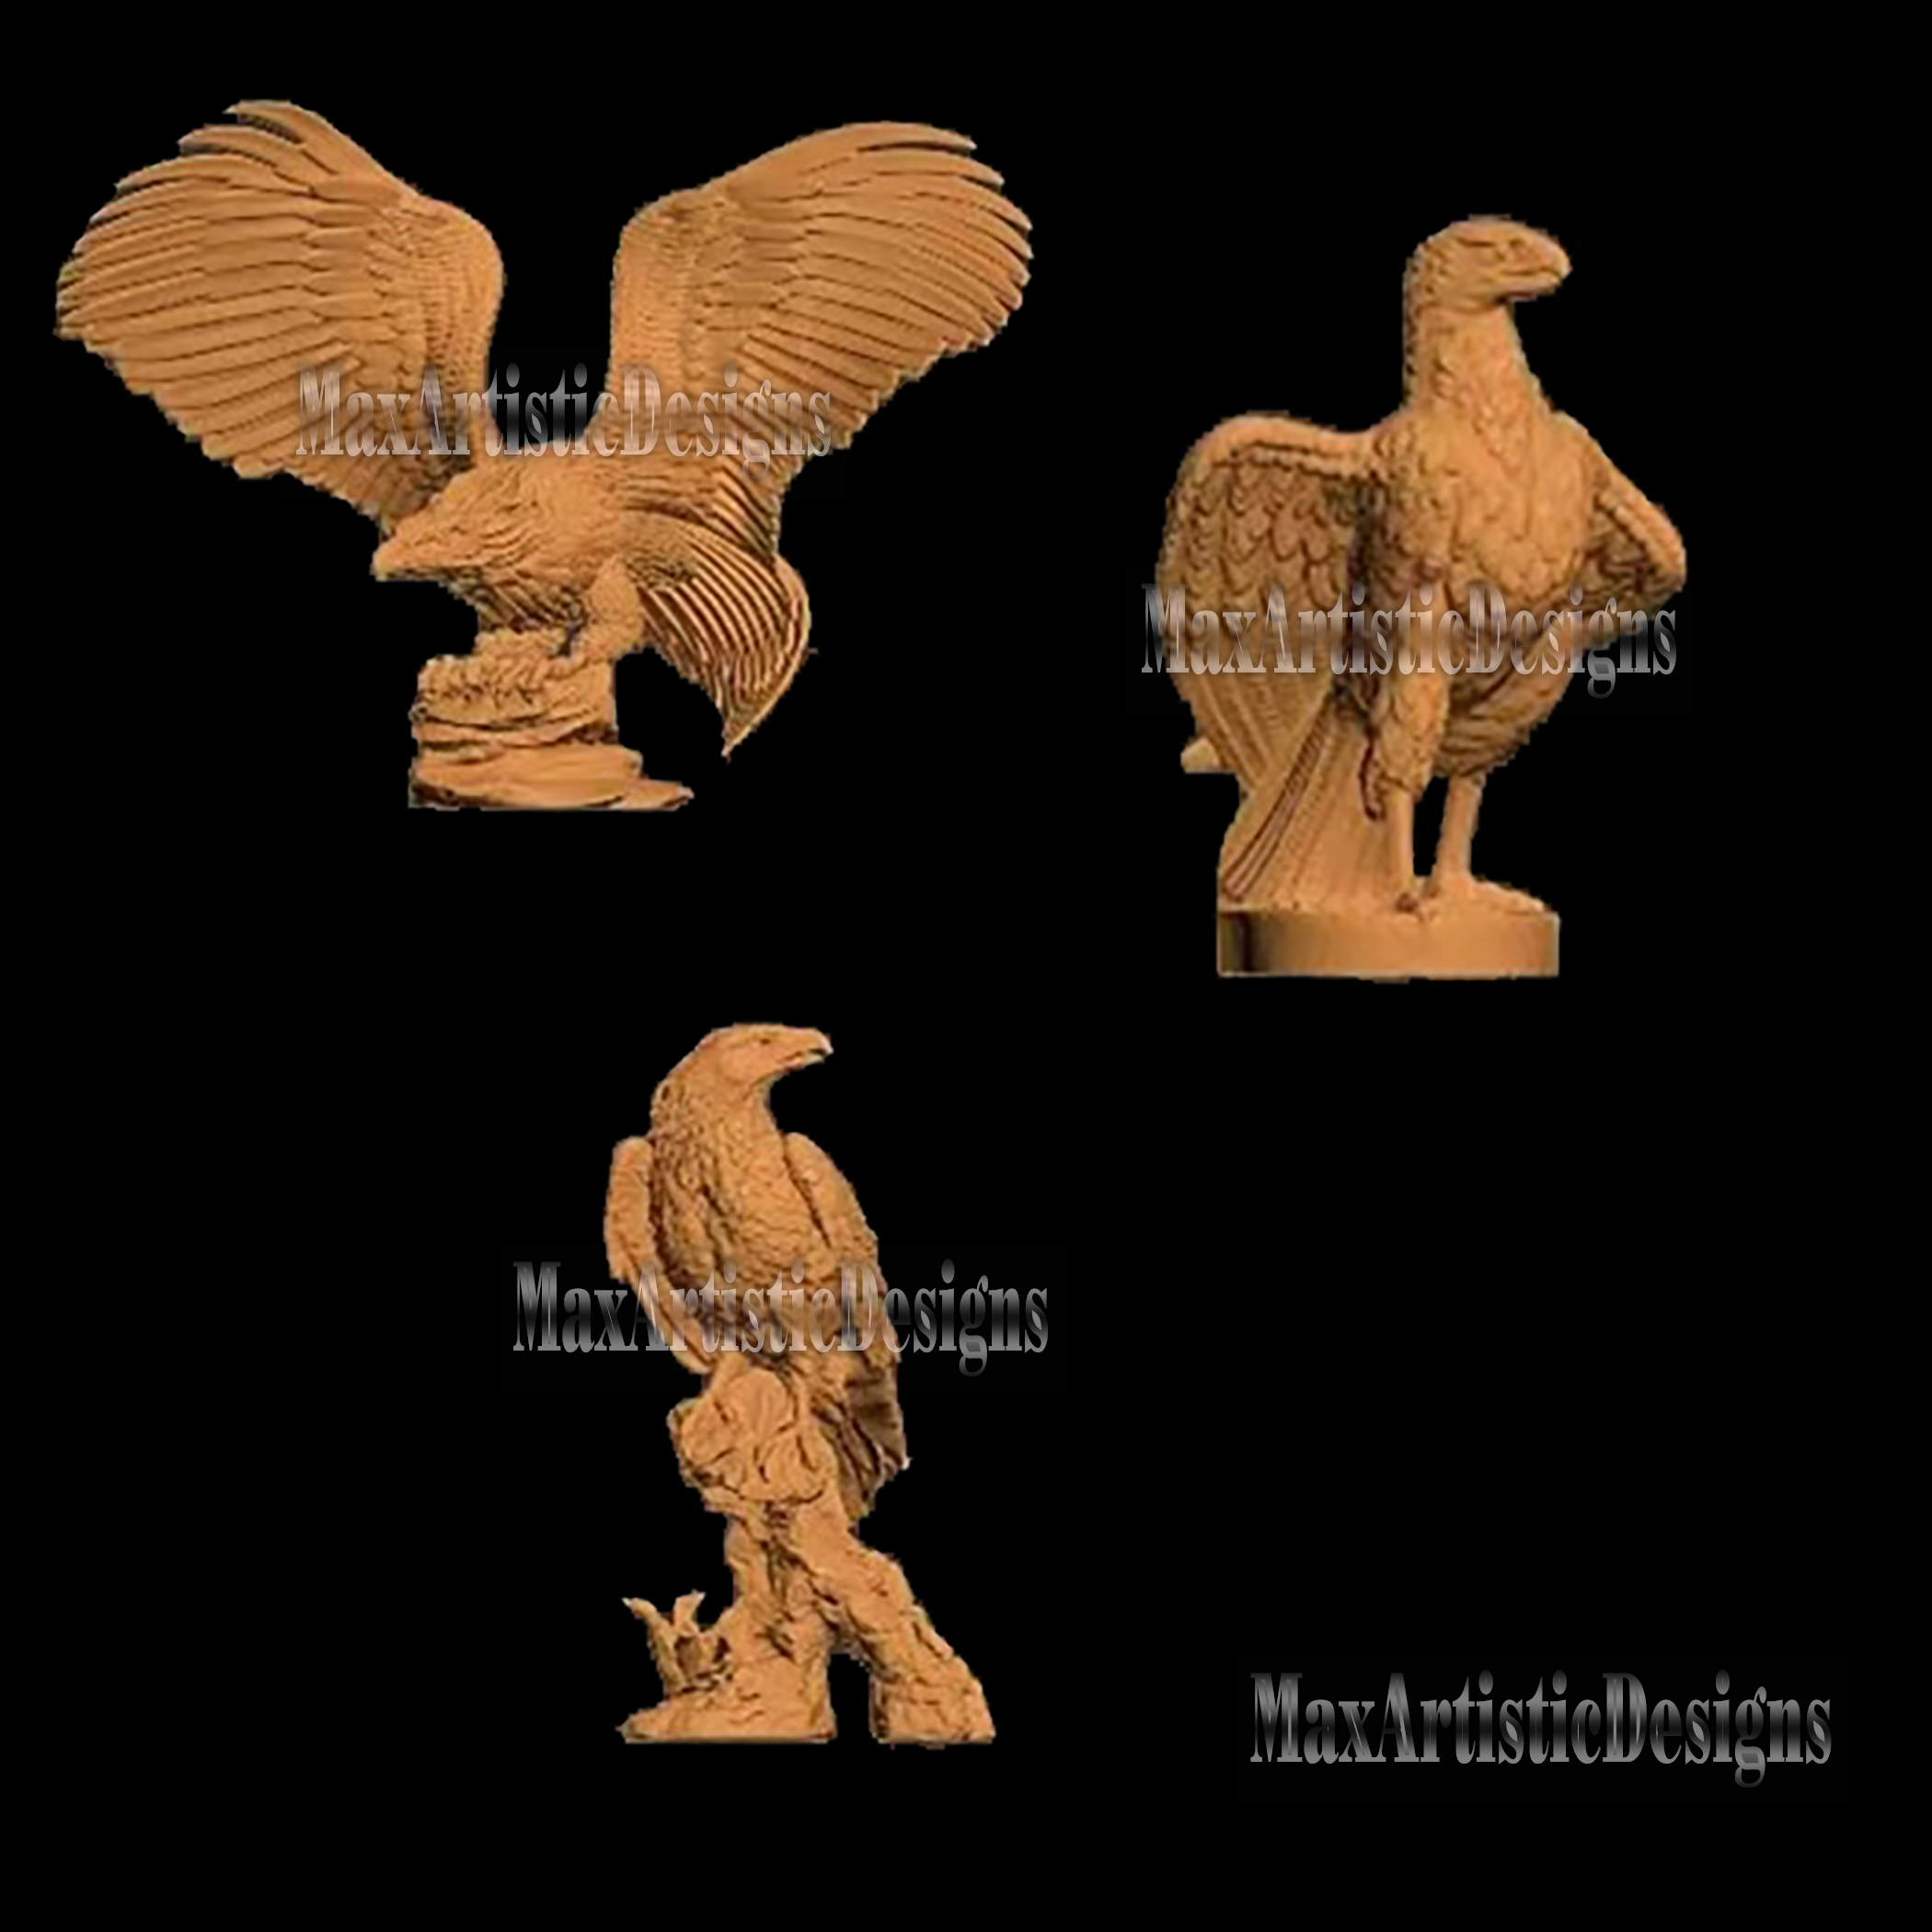 8+ 3d stl eagle eagles set stl relief models for cnc router and 3d printer in stl format animal pack digital download